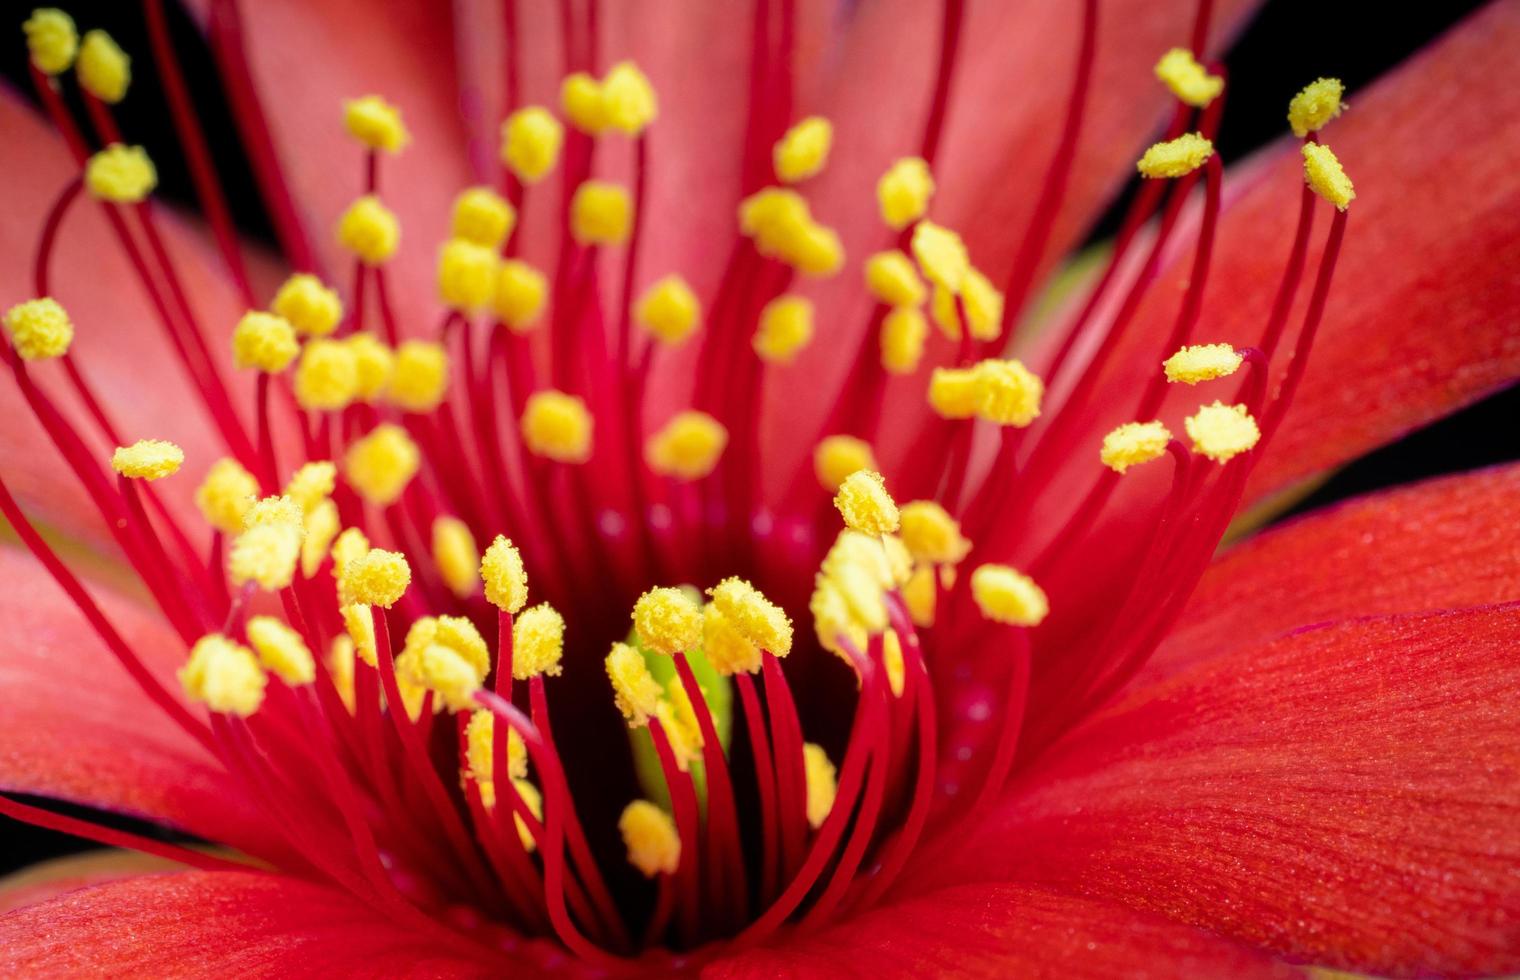 polen amarillo en numerosos pedúnculos rojos de flores de cactus rojo. los estambres centrales son pétalos rojos borrosos en el fondo. foto